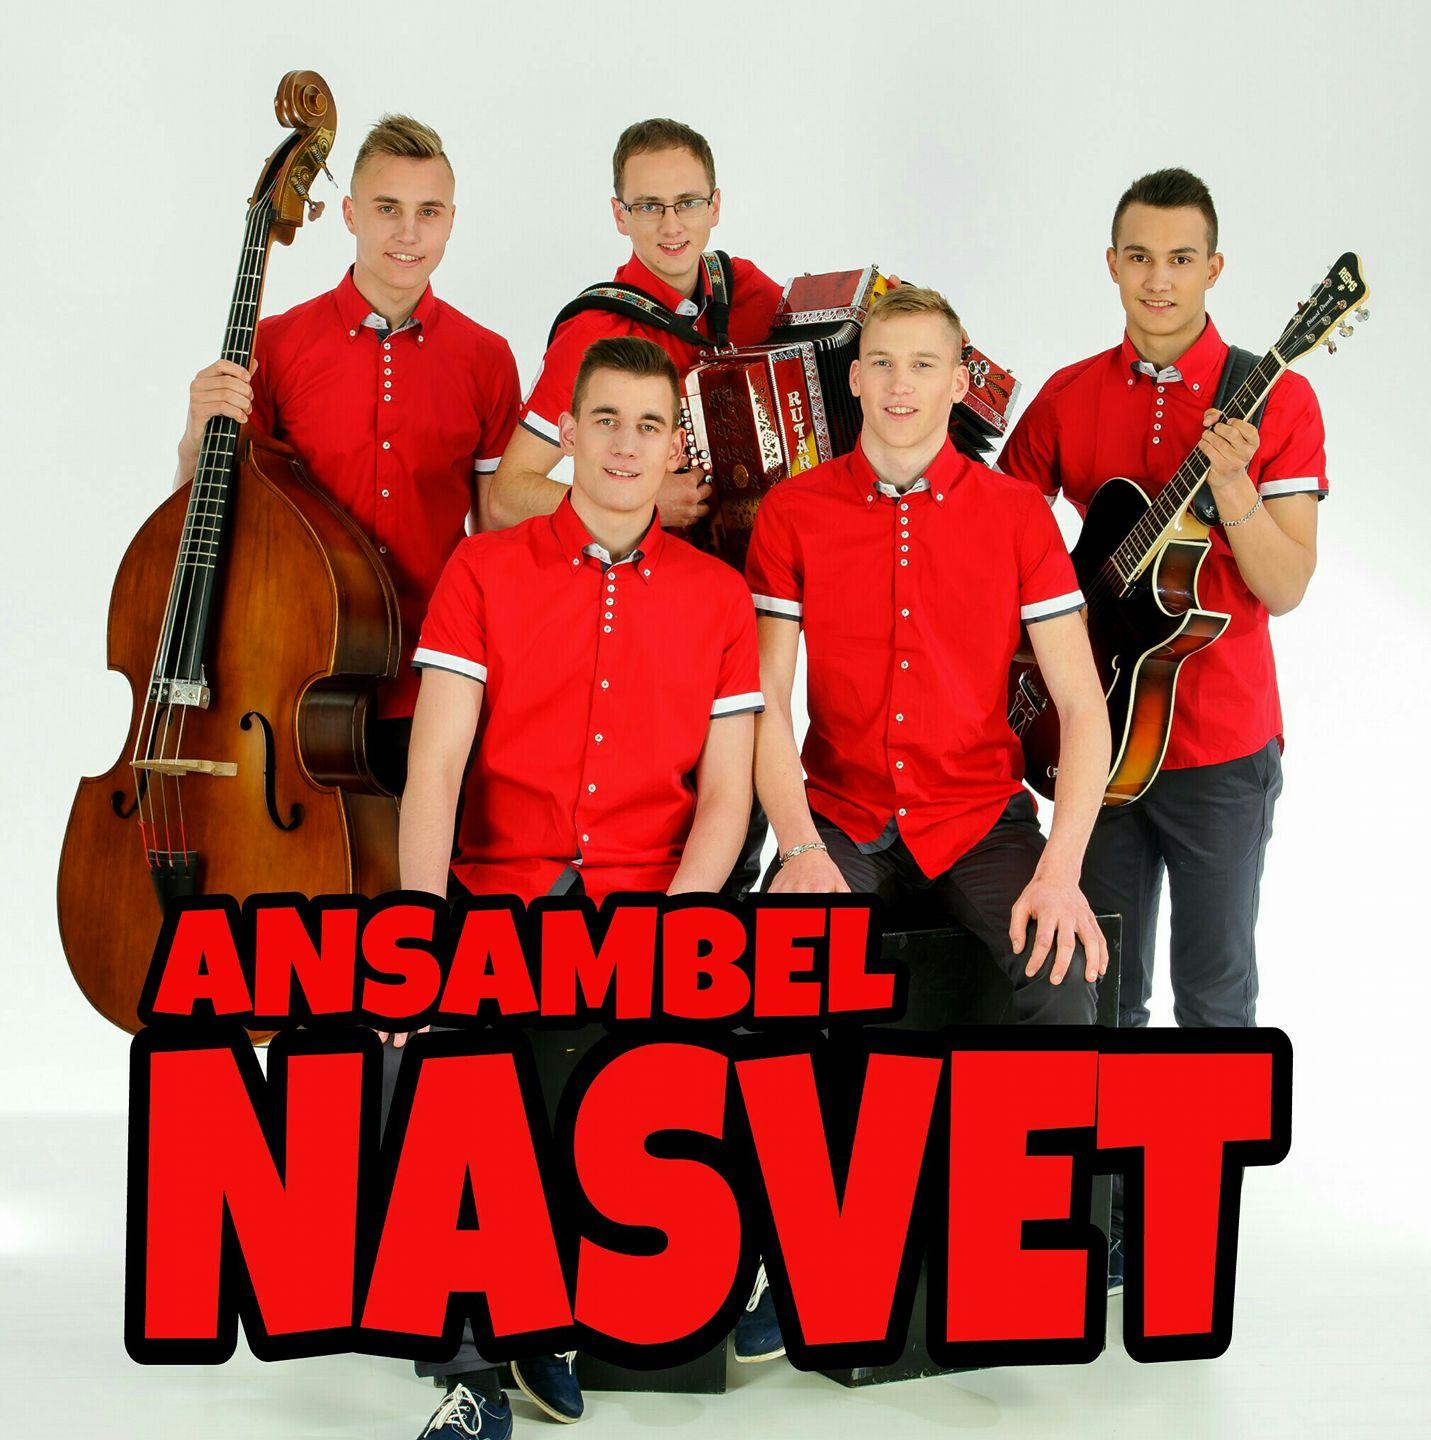 Ansambel Nasvet